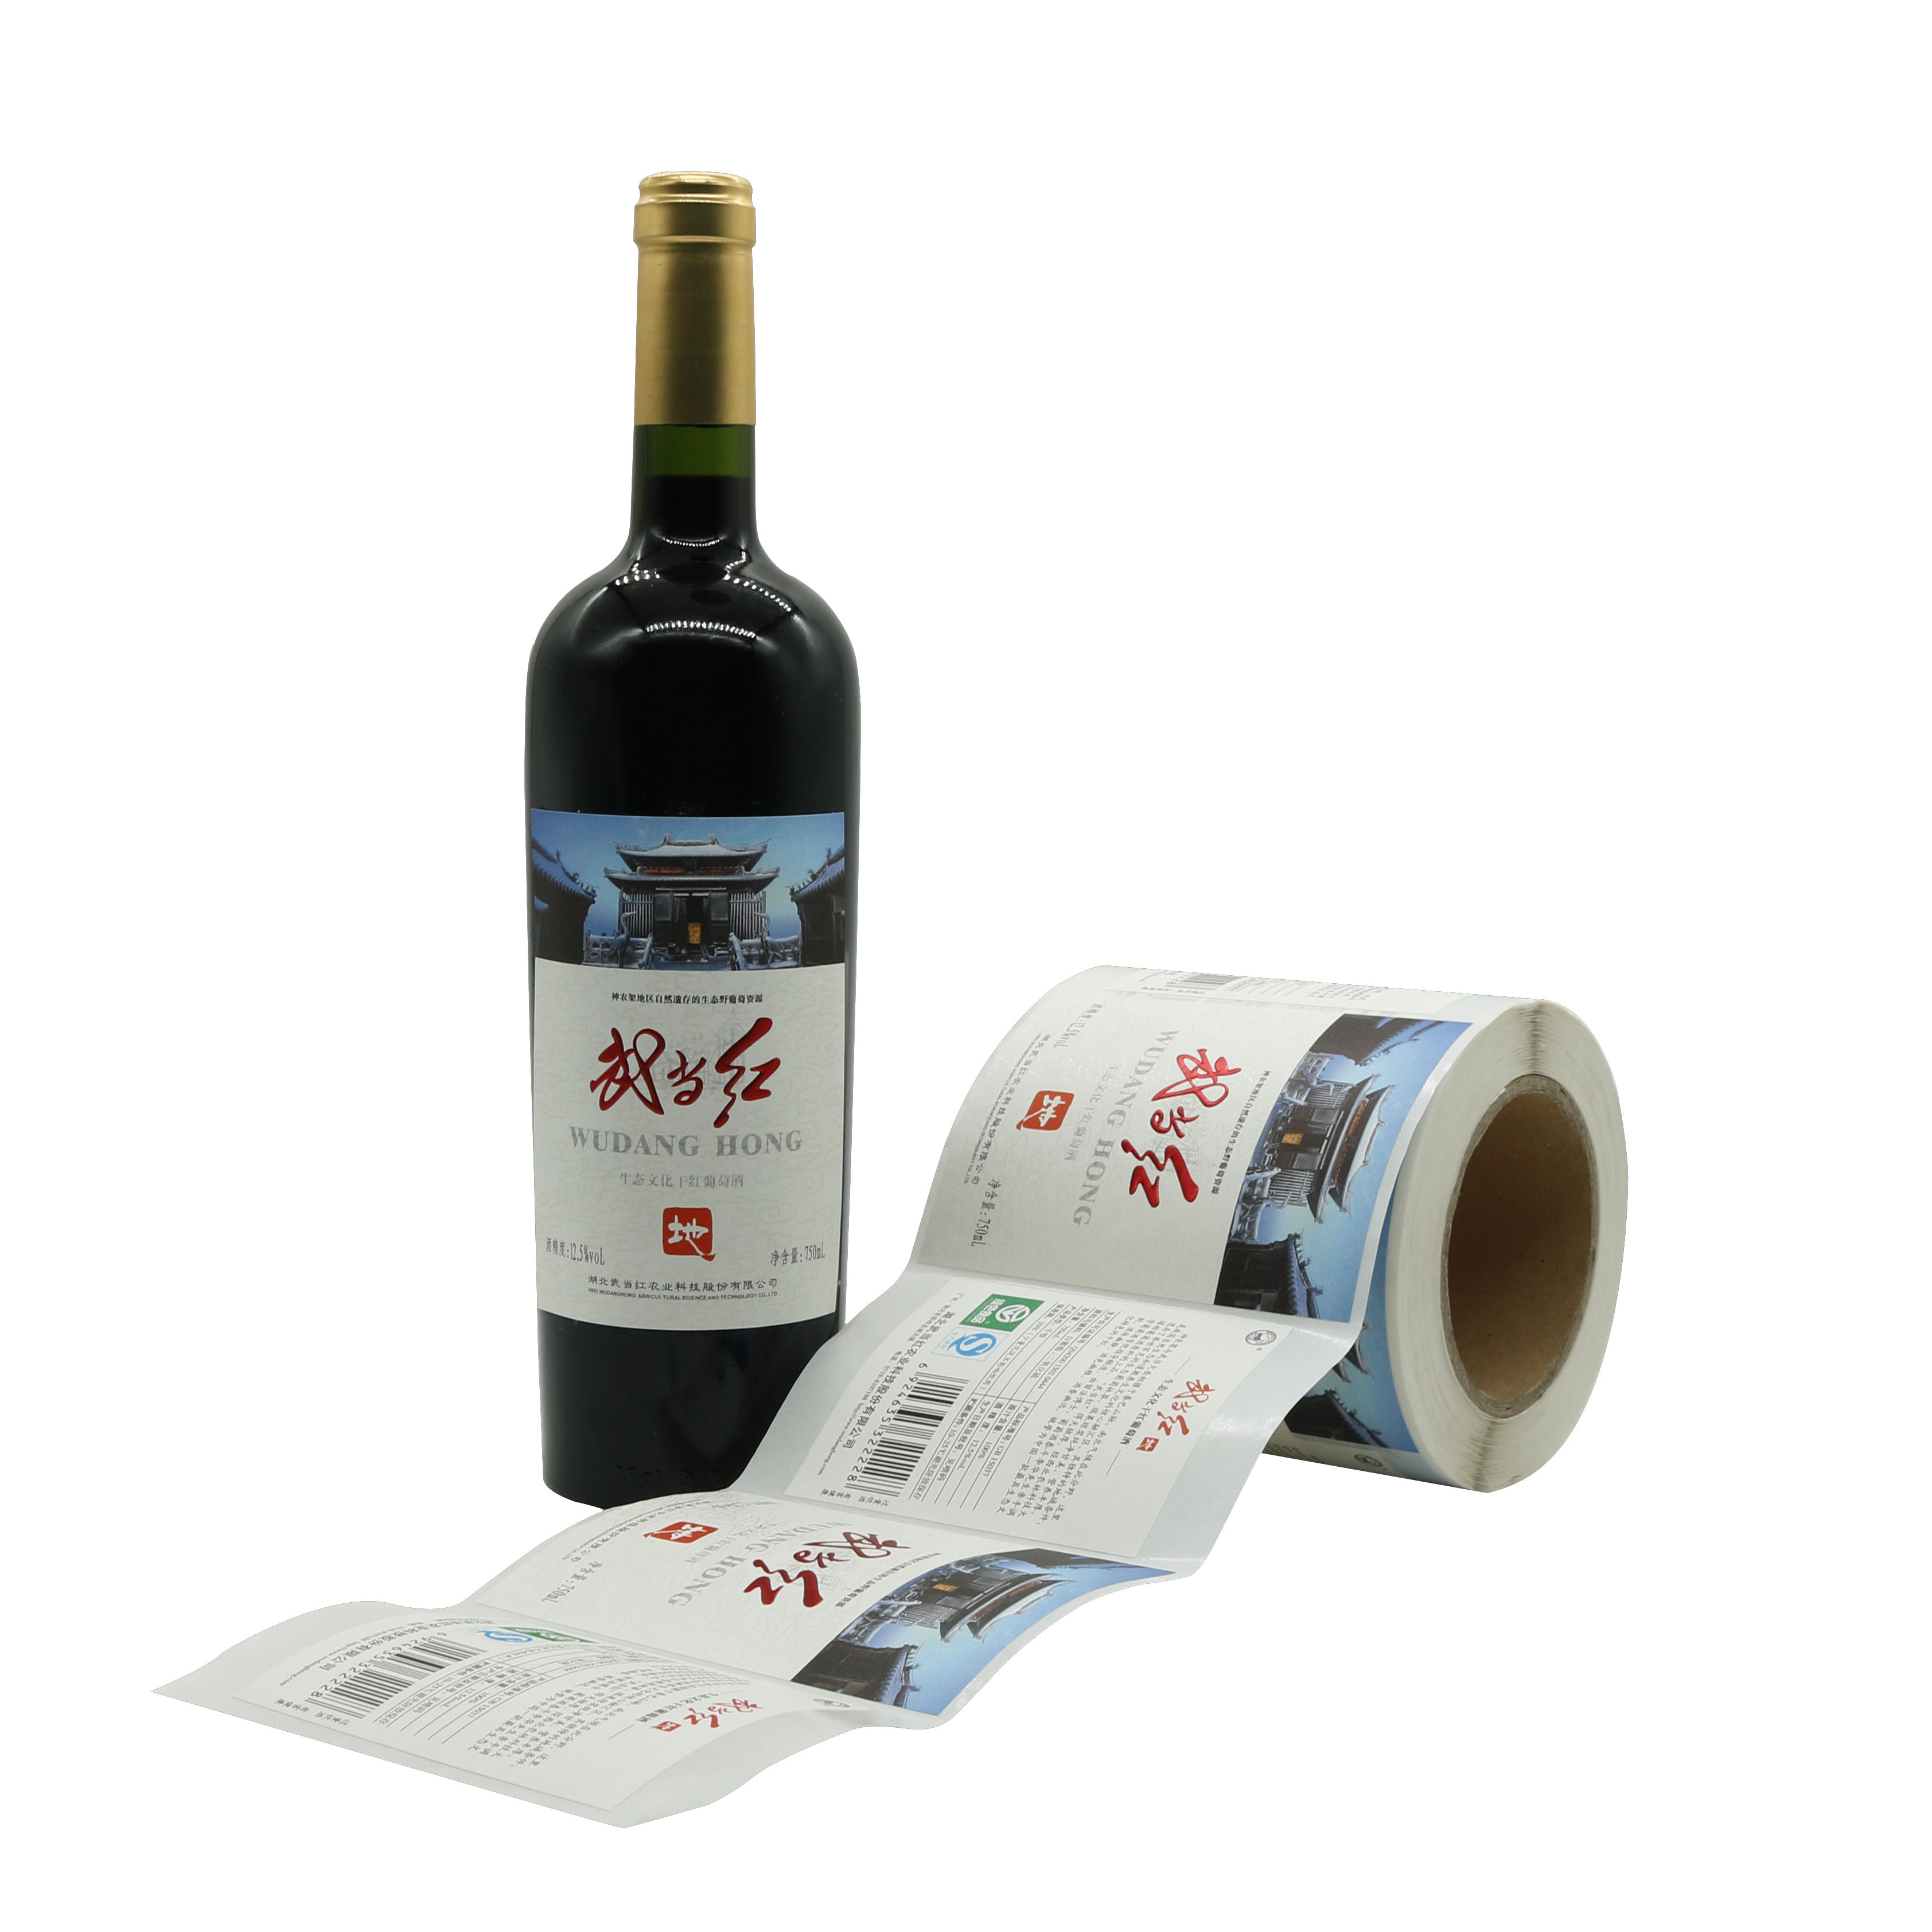 этикетирования и обкатки колпачков для производства вина - СДА